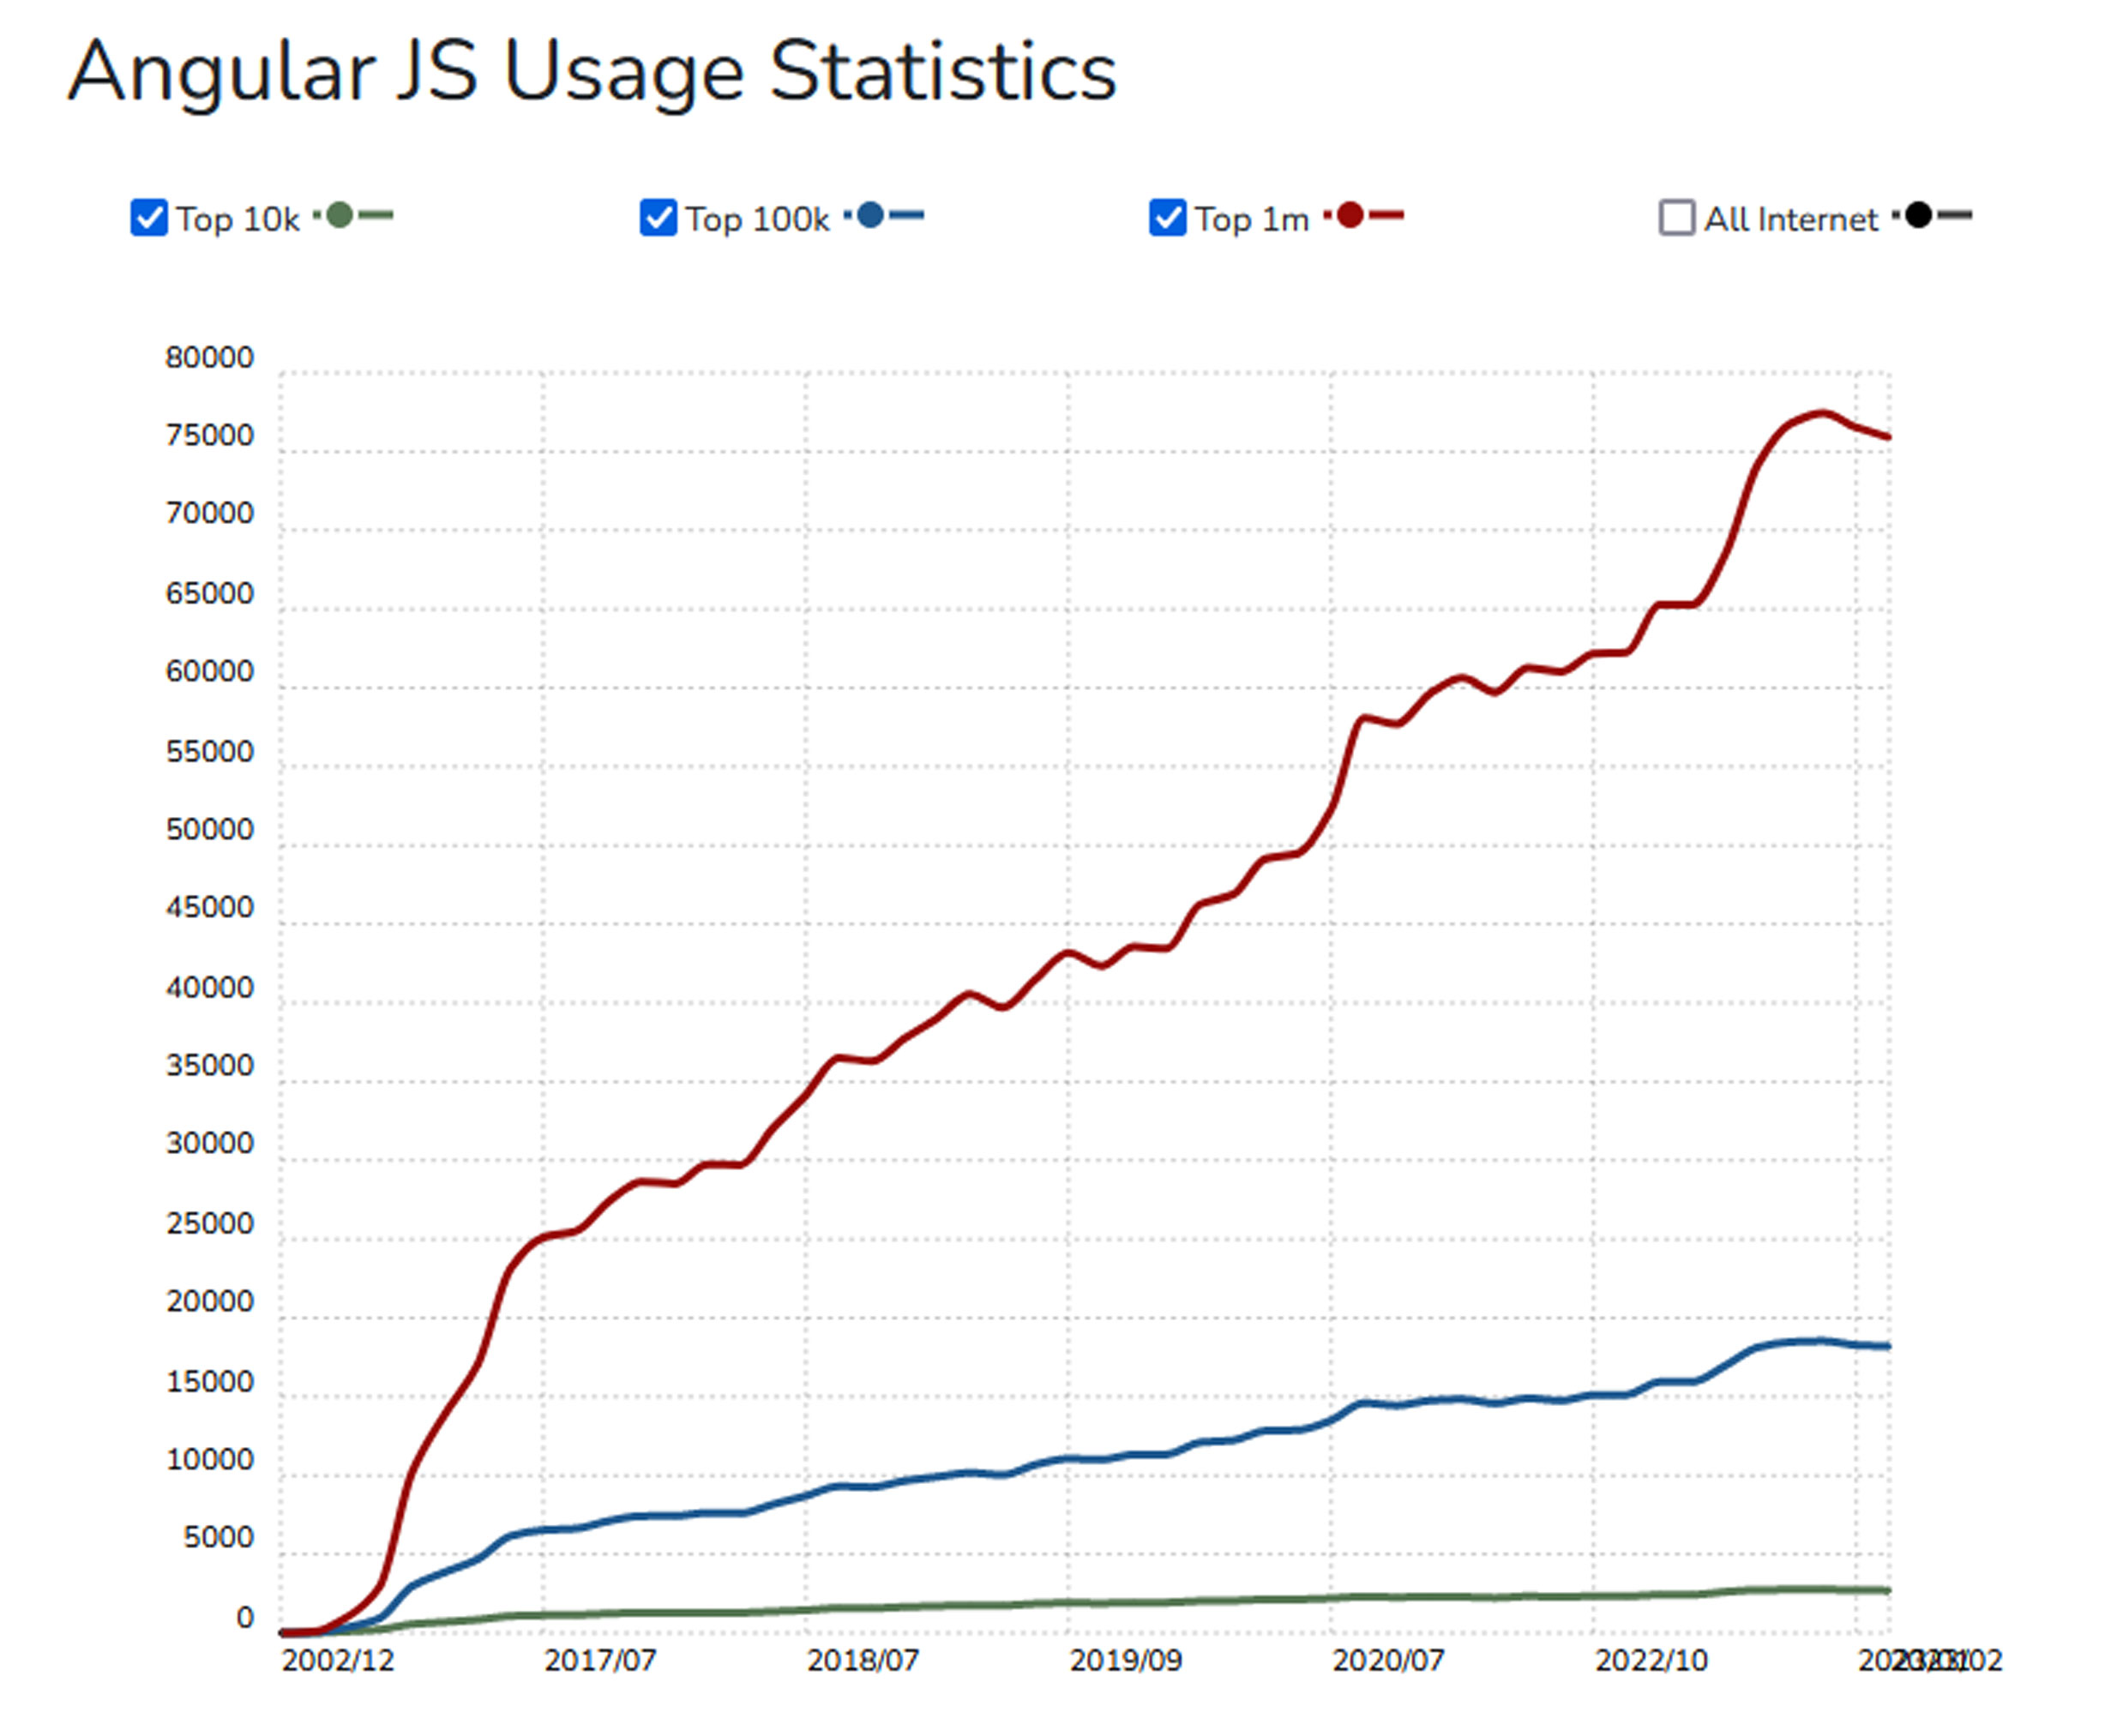 Angular JS Usage Statistics